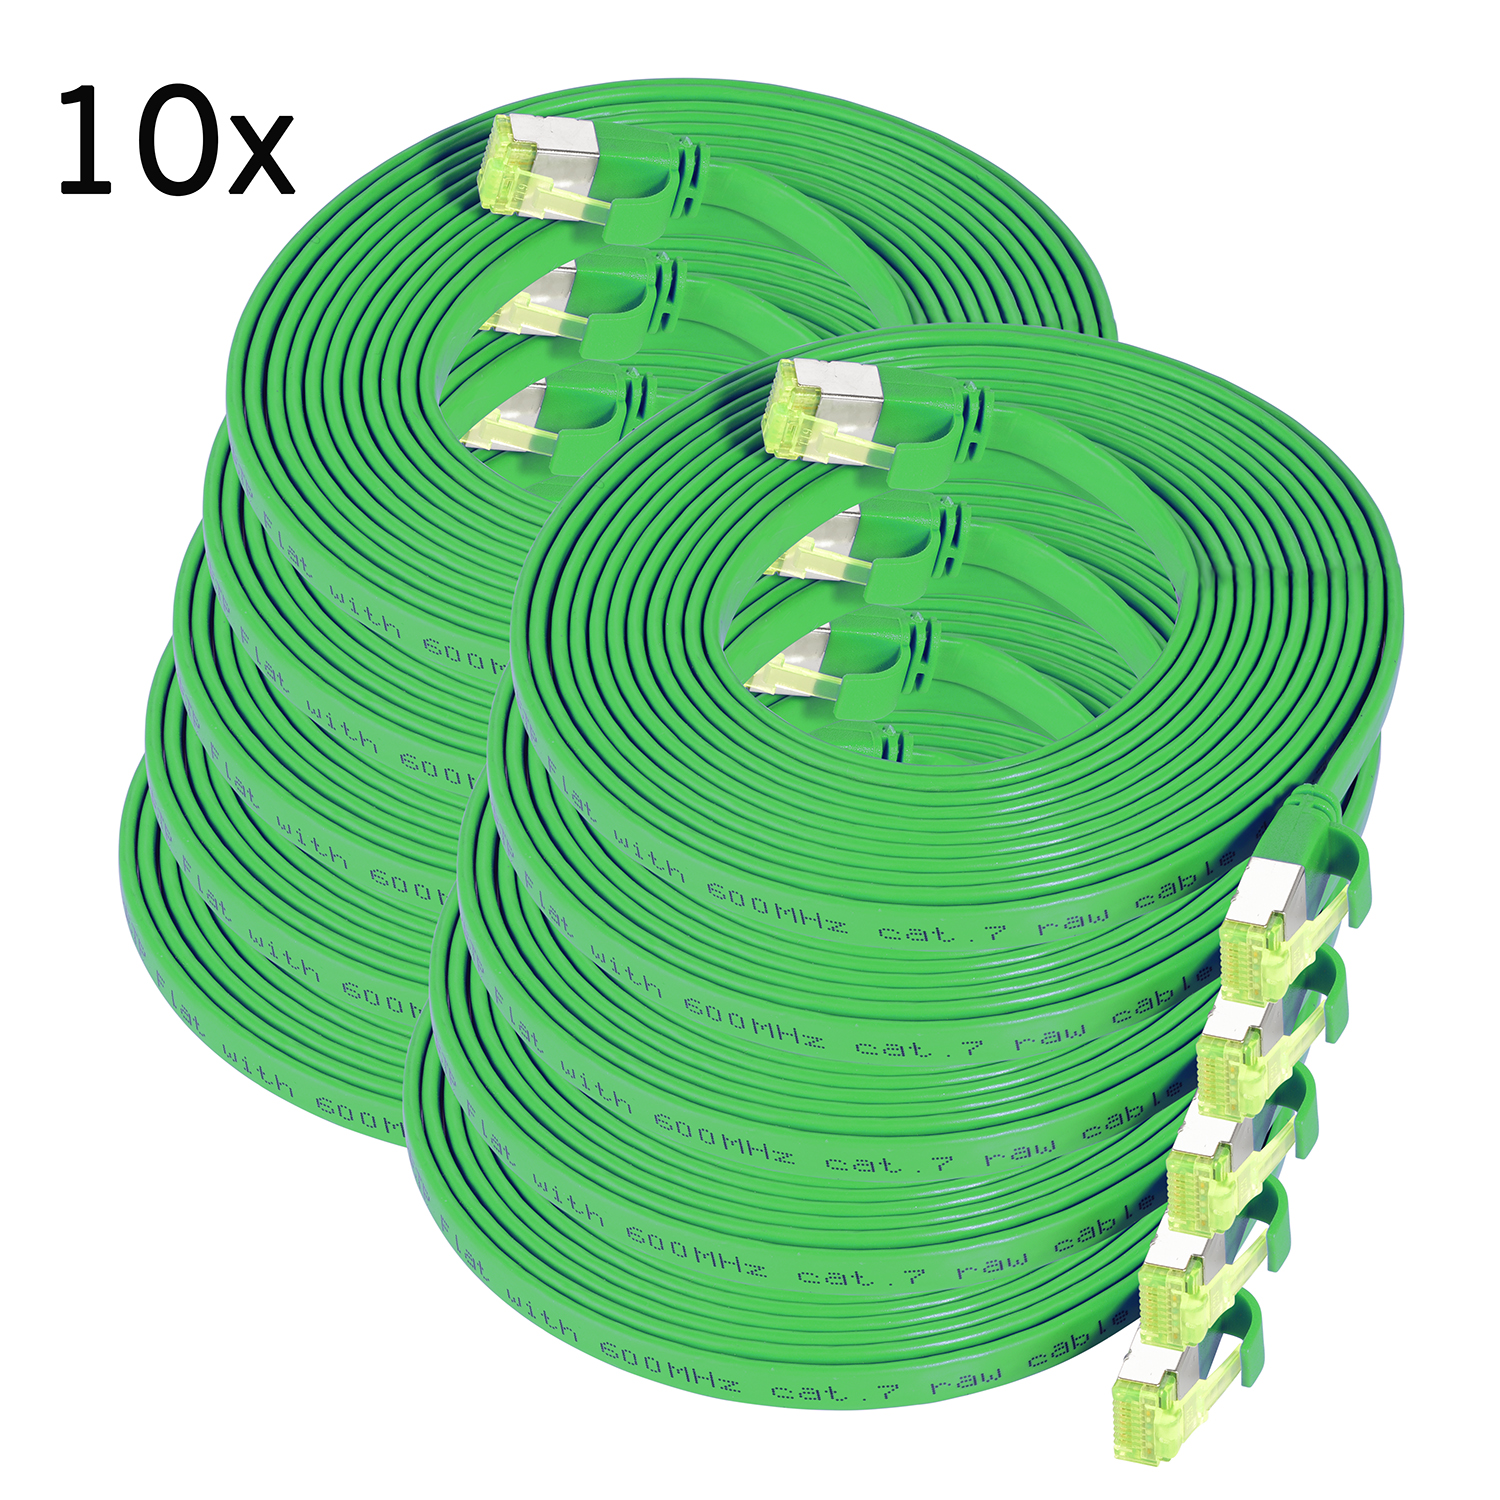 TPFNET 10er Pack 1m Patchkabel m Flachkabel 10 grün, U/FTP 1 GBit, / Netzwerkkabel